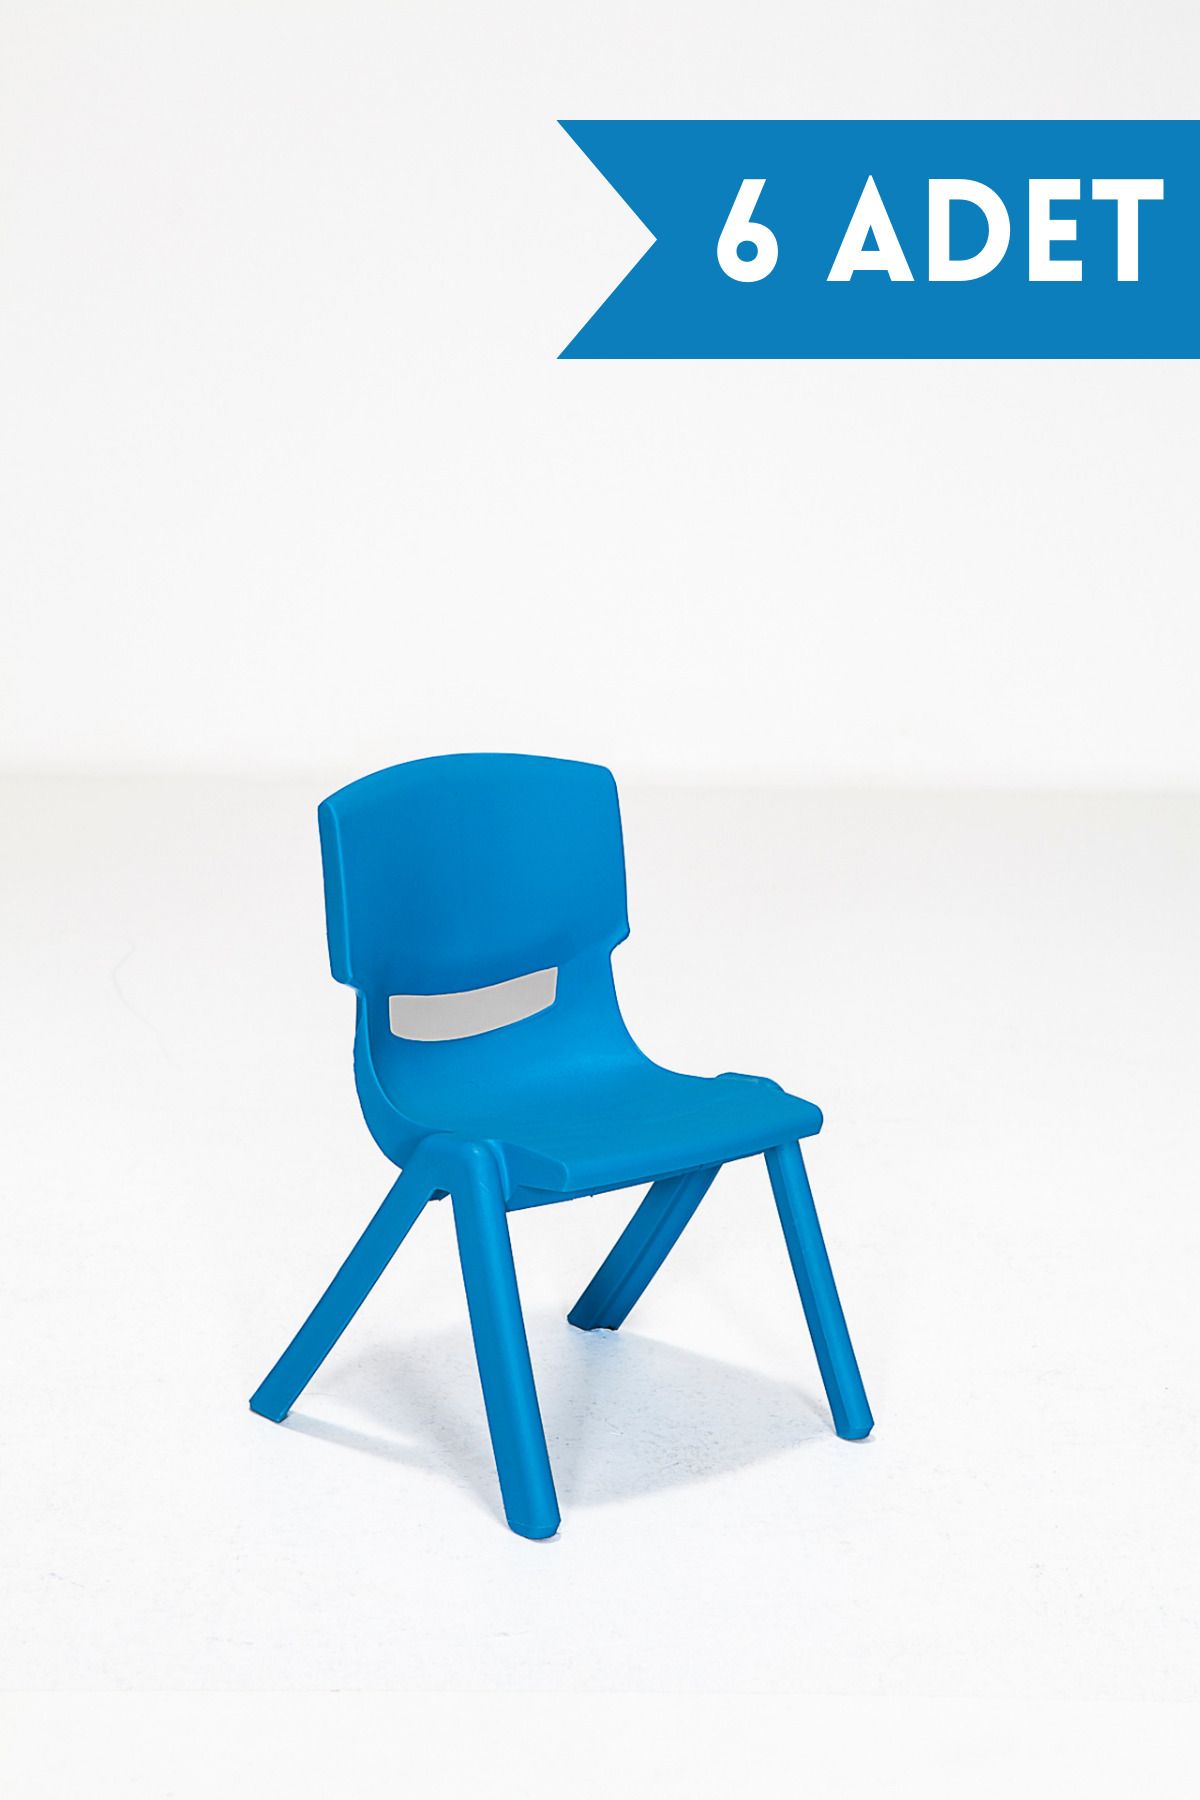 MOBETTO 6 Adet Kreş Anaokulu Çocuk Sandalyesi Sert Plastik- Mavi